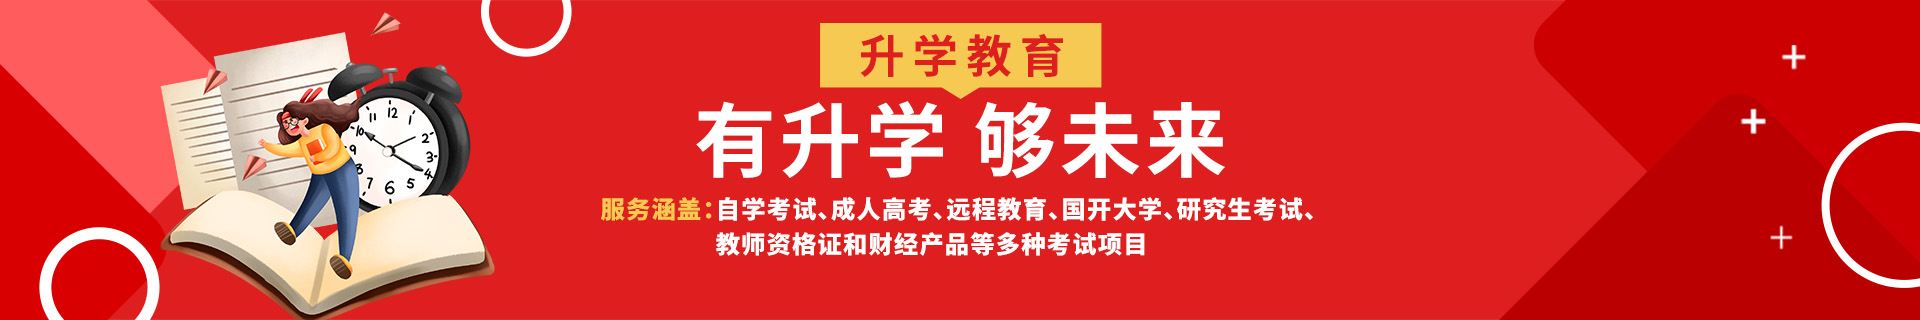 广州天河区升学教育机构